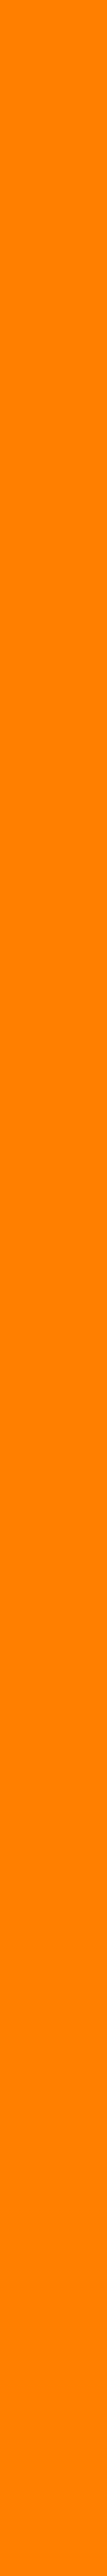 Background-Orange-2